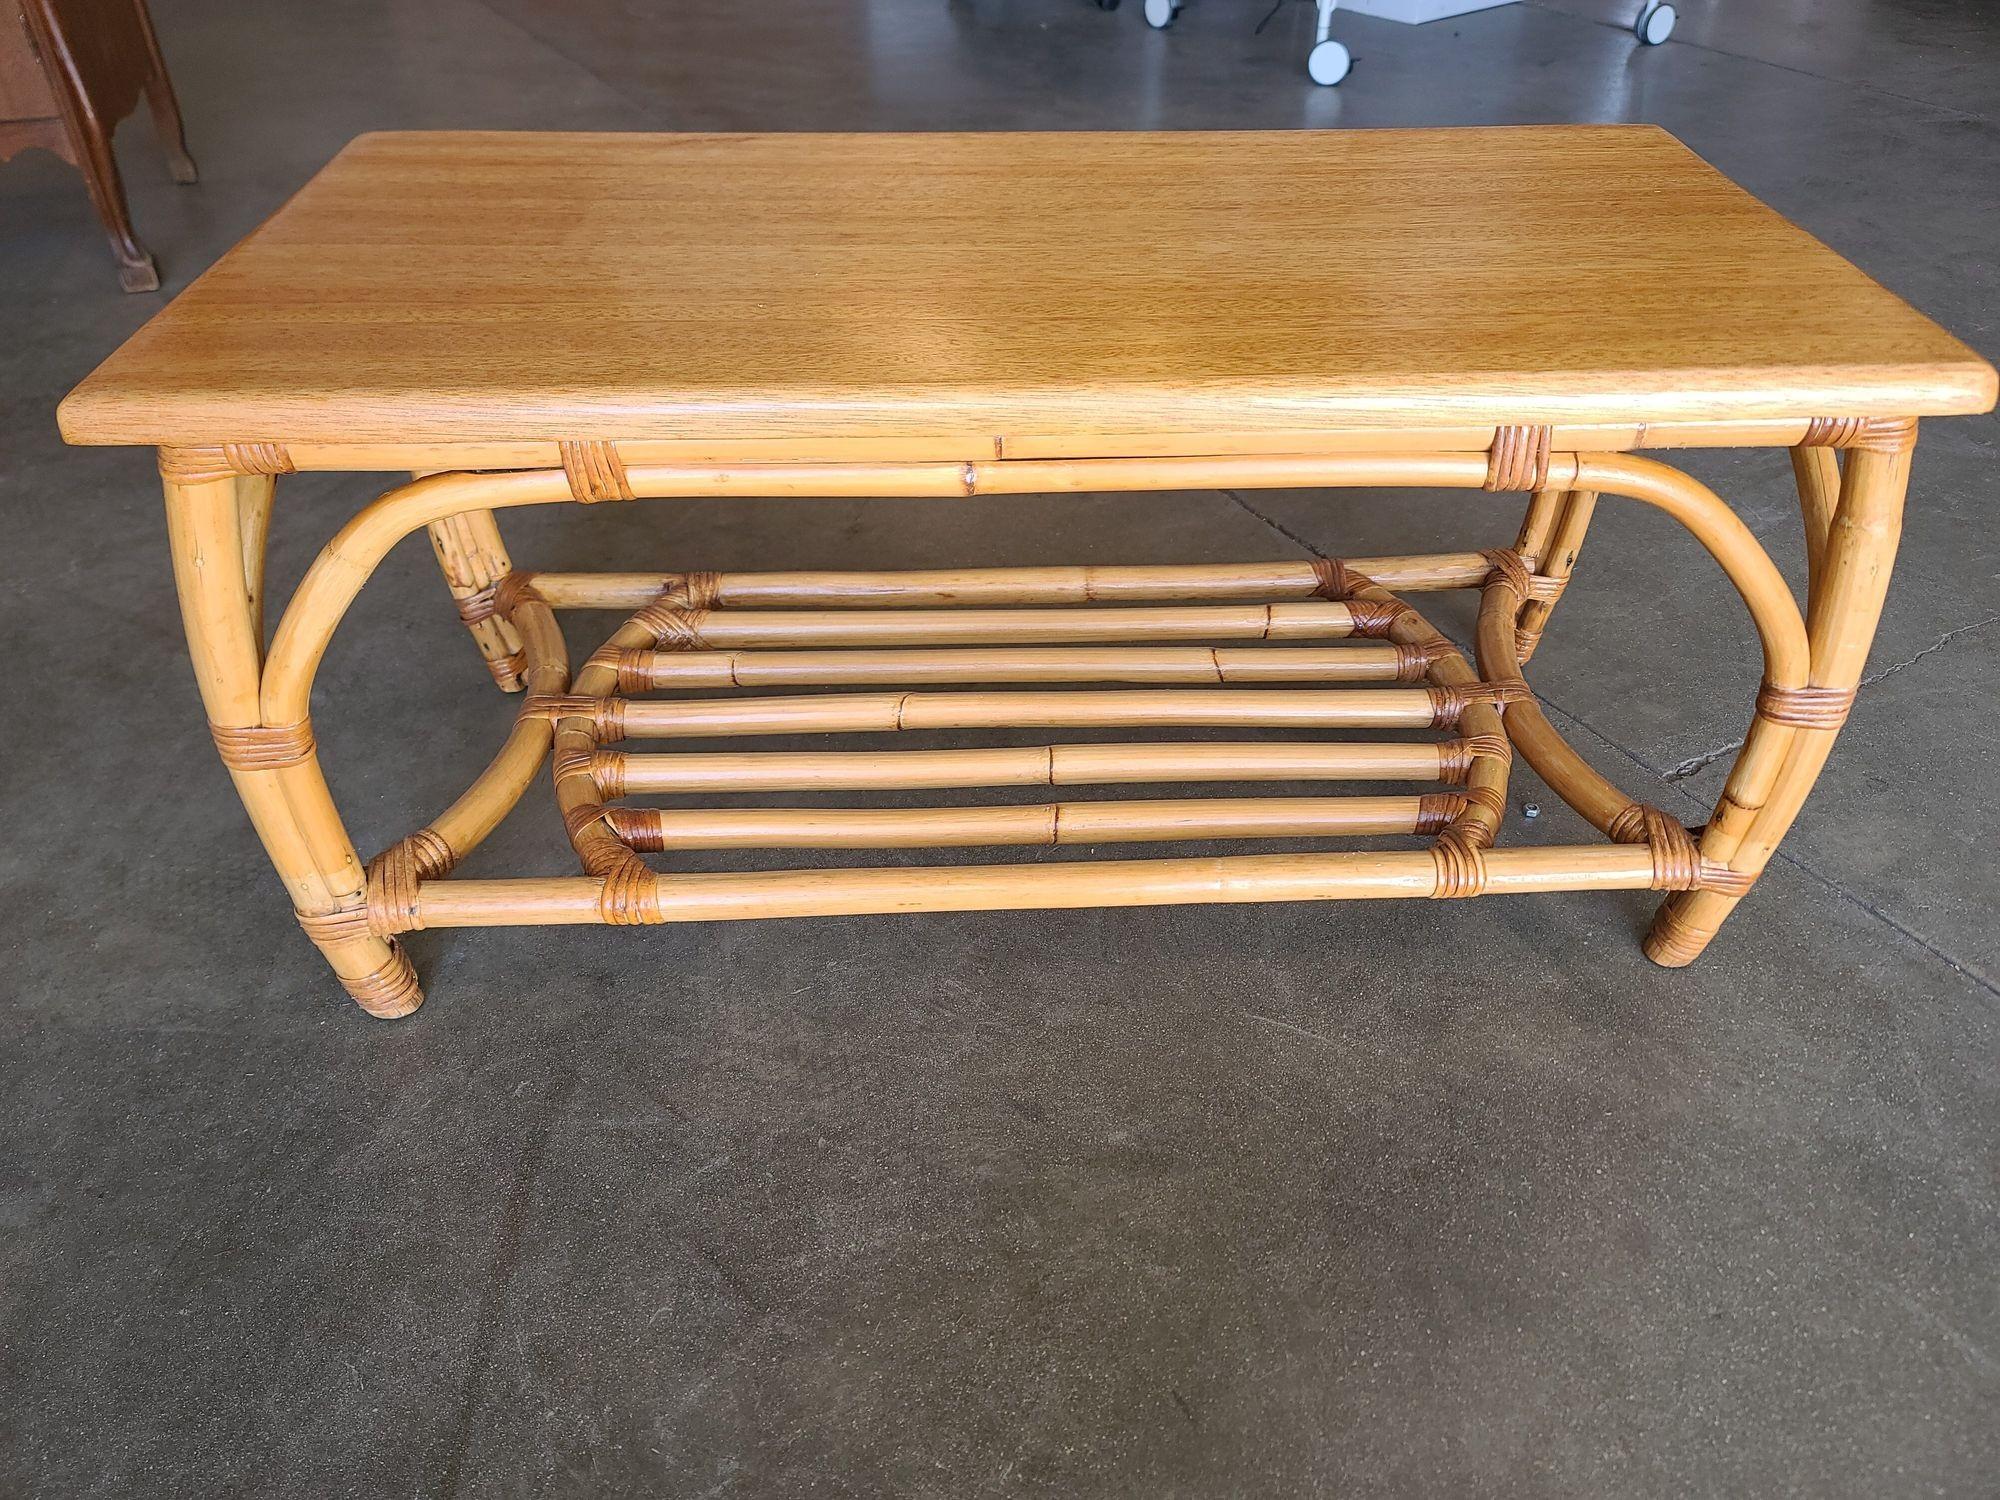 Cette pièce est une table basse en rotin vintage des années 1940 avec une magnifique base en bois courbé et des arcs stylisés intégrés. Il possède également une magnifique table en acajou. Cette table ne manquera pas d'attirer l'attention en tant